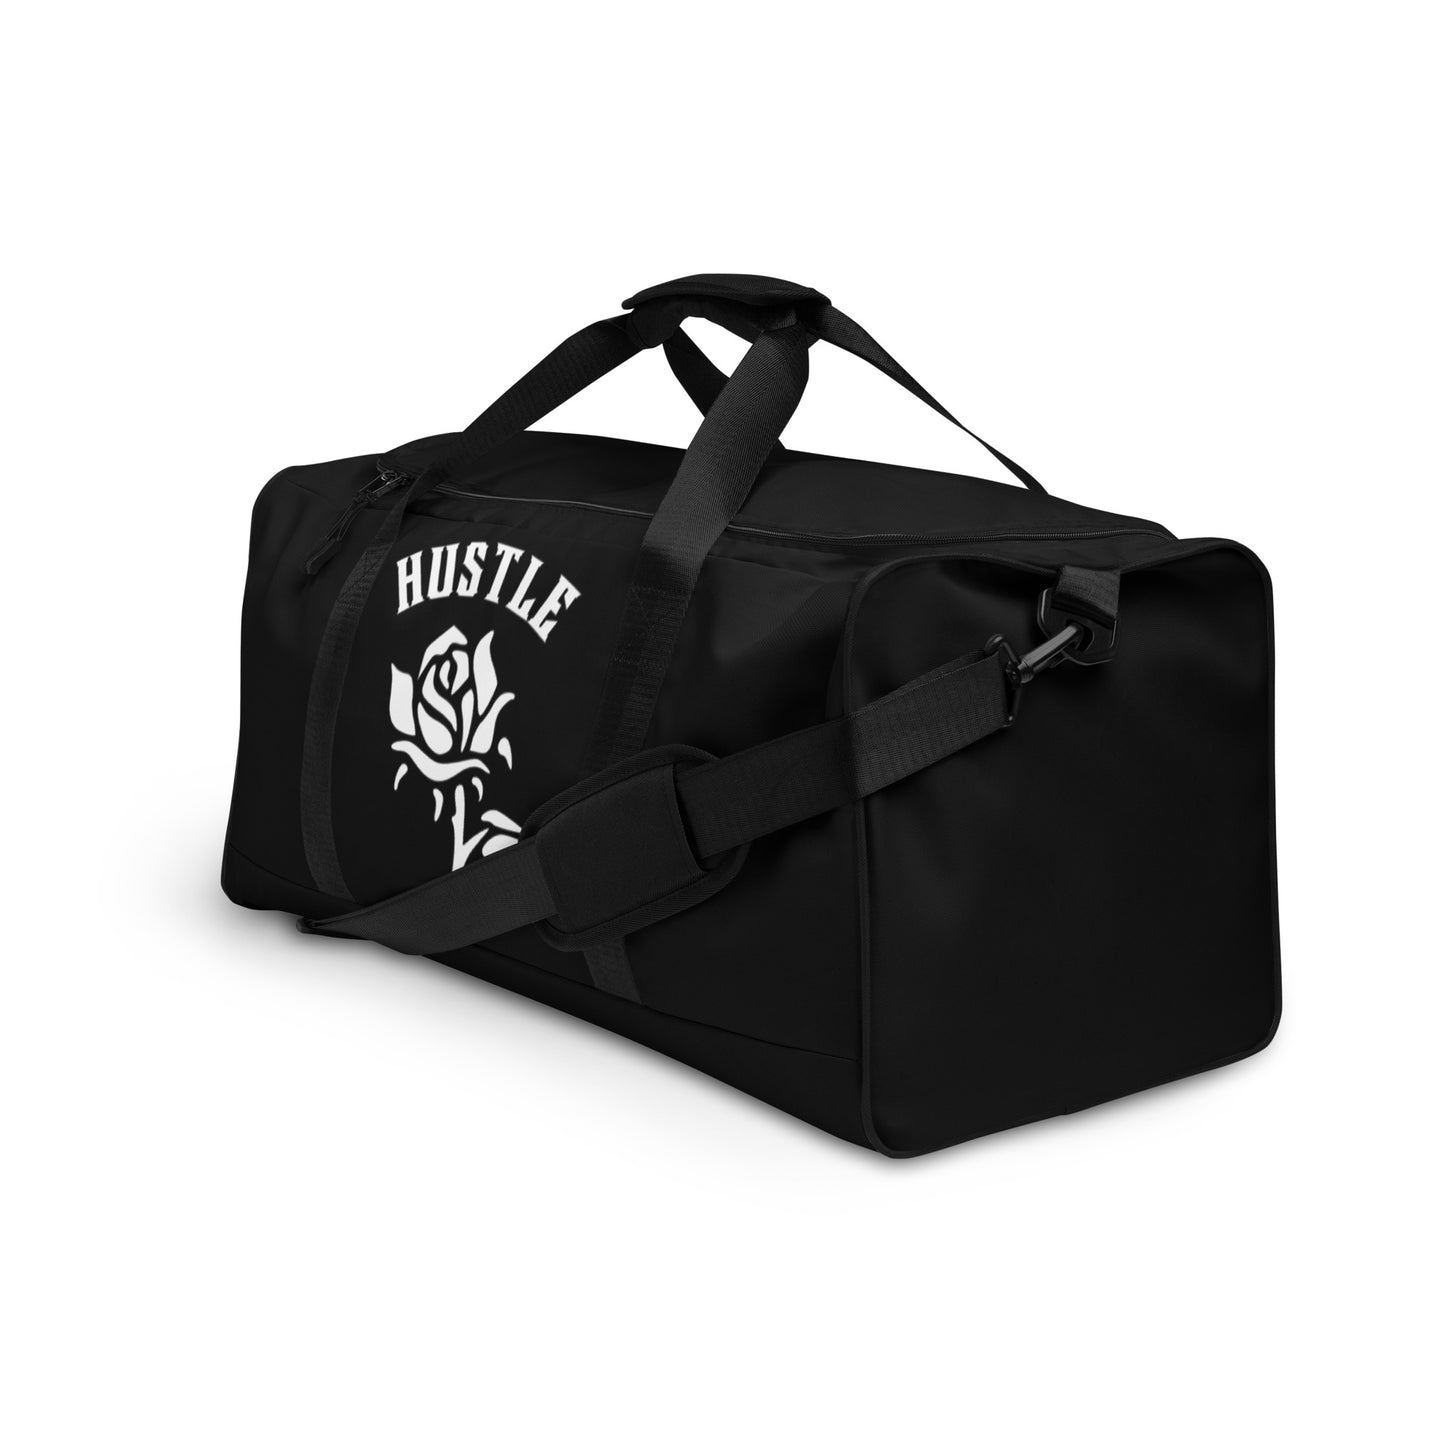 Hustle Rose Black Duffle bag